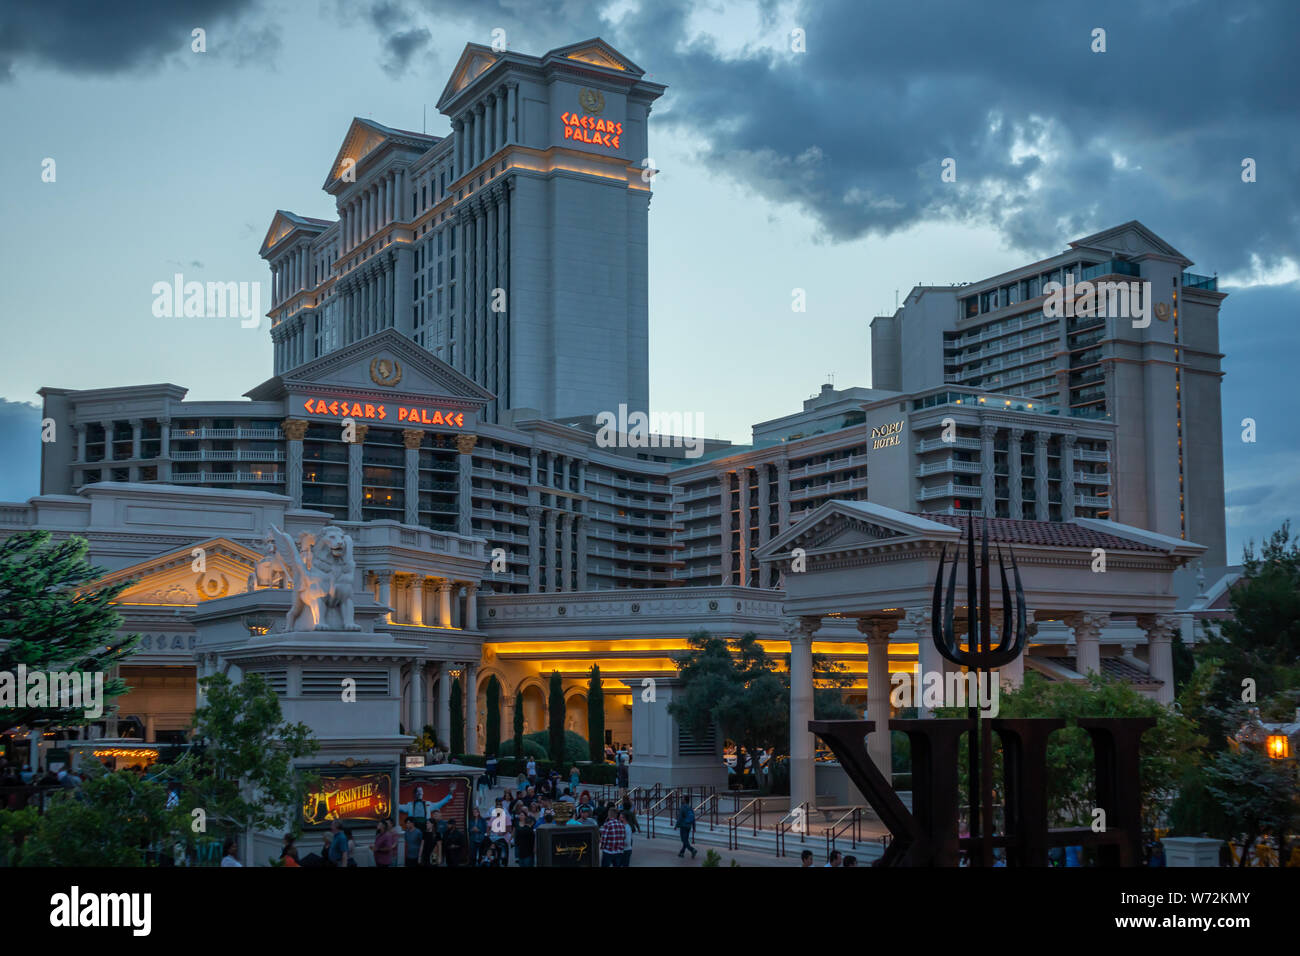 Las Vegas, Nevada, USA. 27 mai, 2019. Caesars Palace Hotel and Casino Las Vegas Strip, l'entrée dans la soirée. Ciel nuageux Banque D'Images